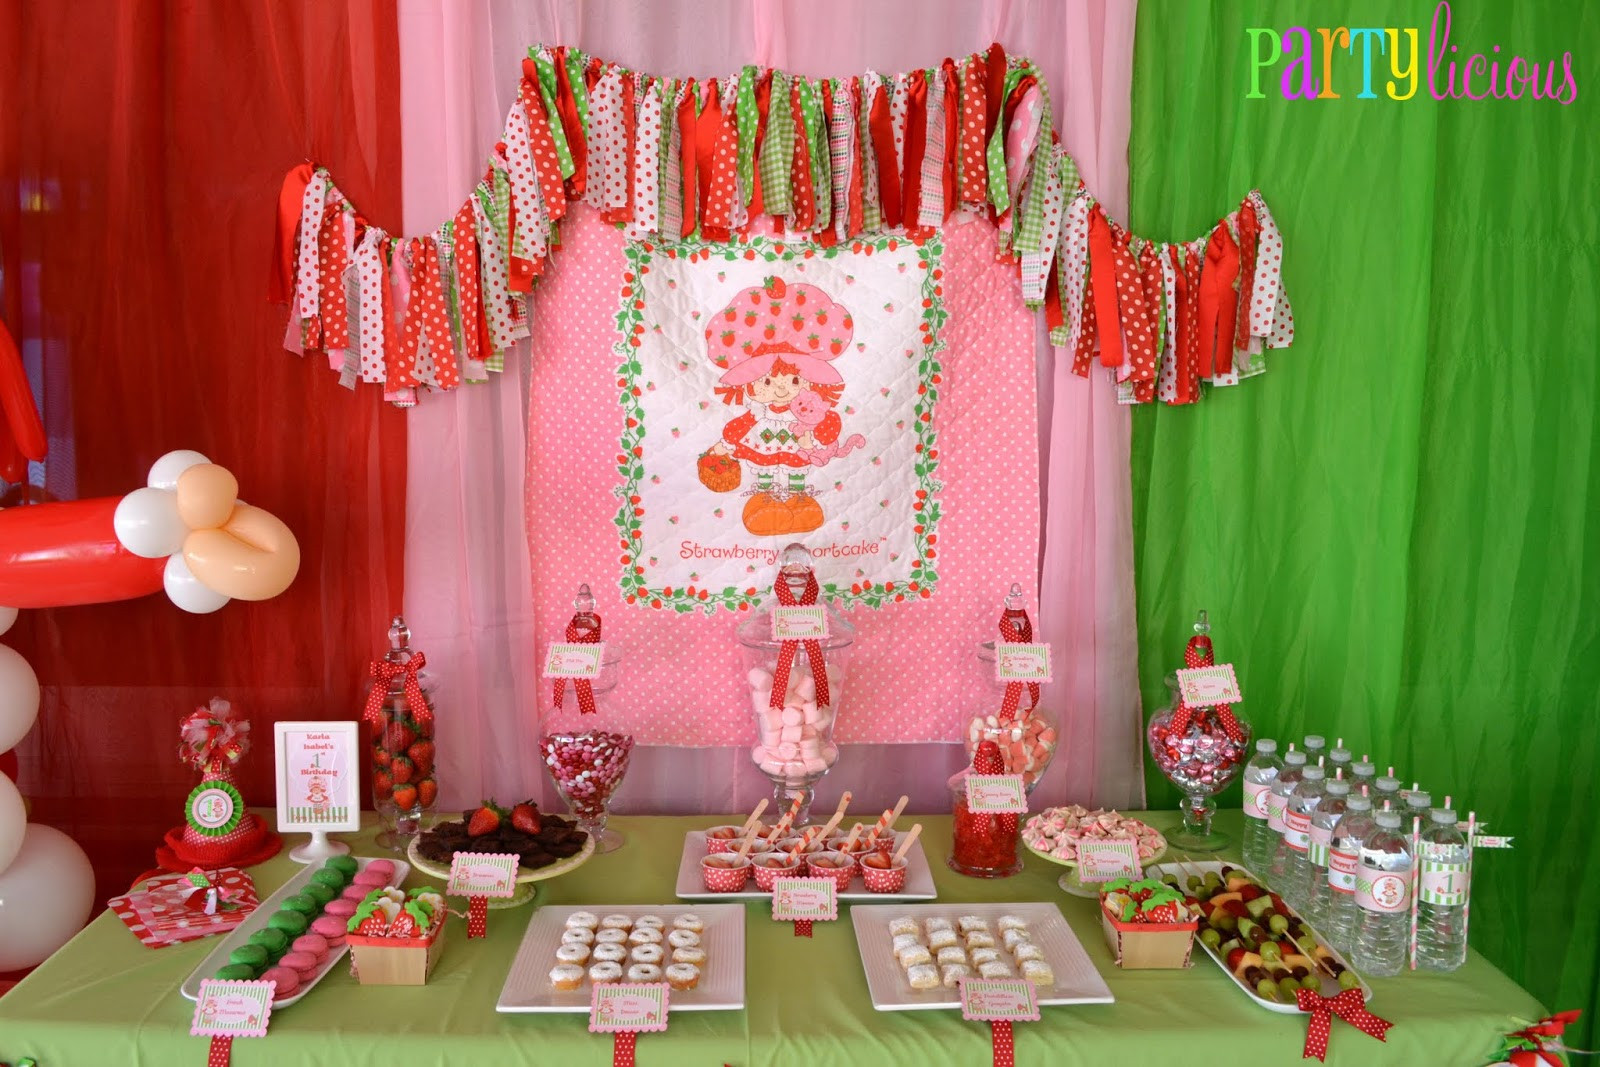 Strawberry Shortcake Birthday Ideas
 Partylicious Events PR Vintage Strawberry Shortcake